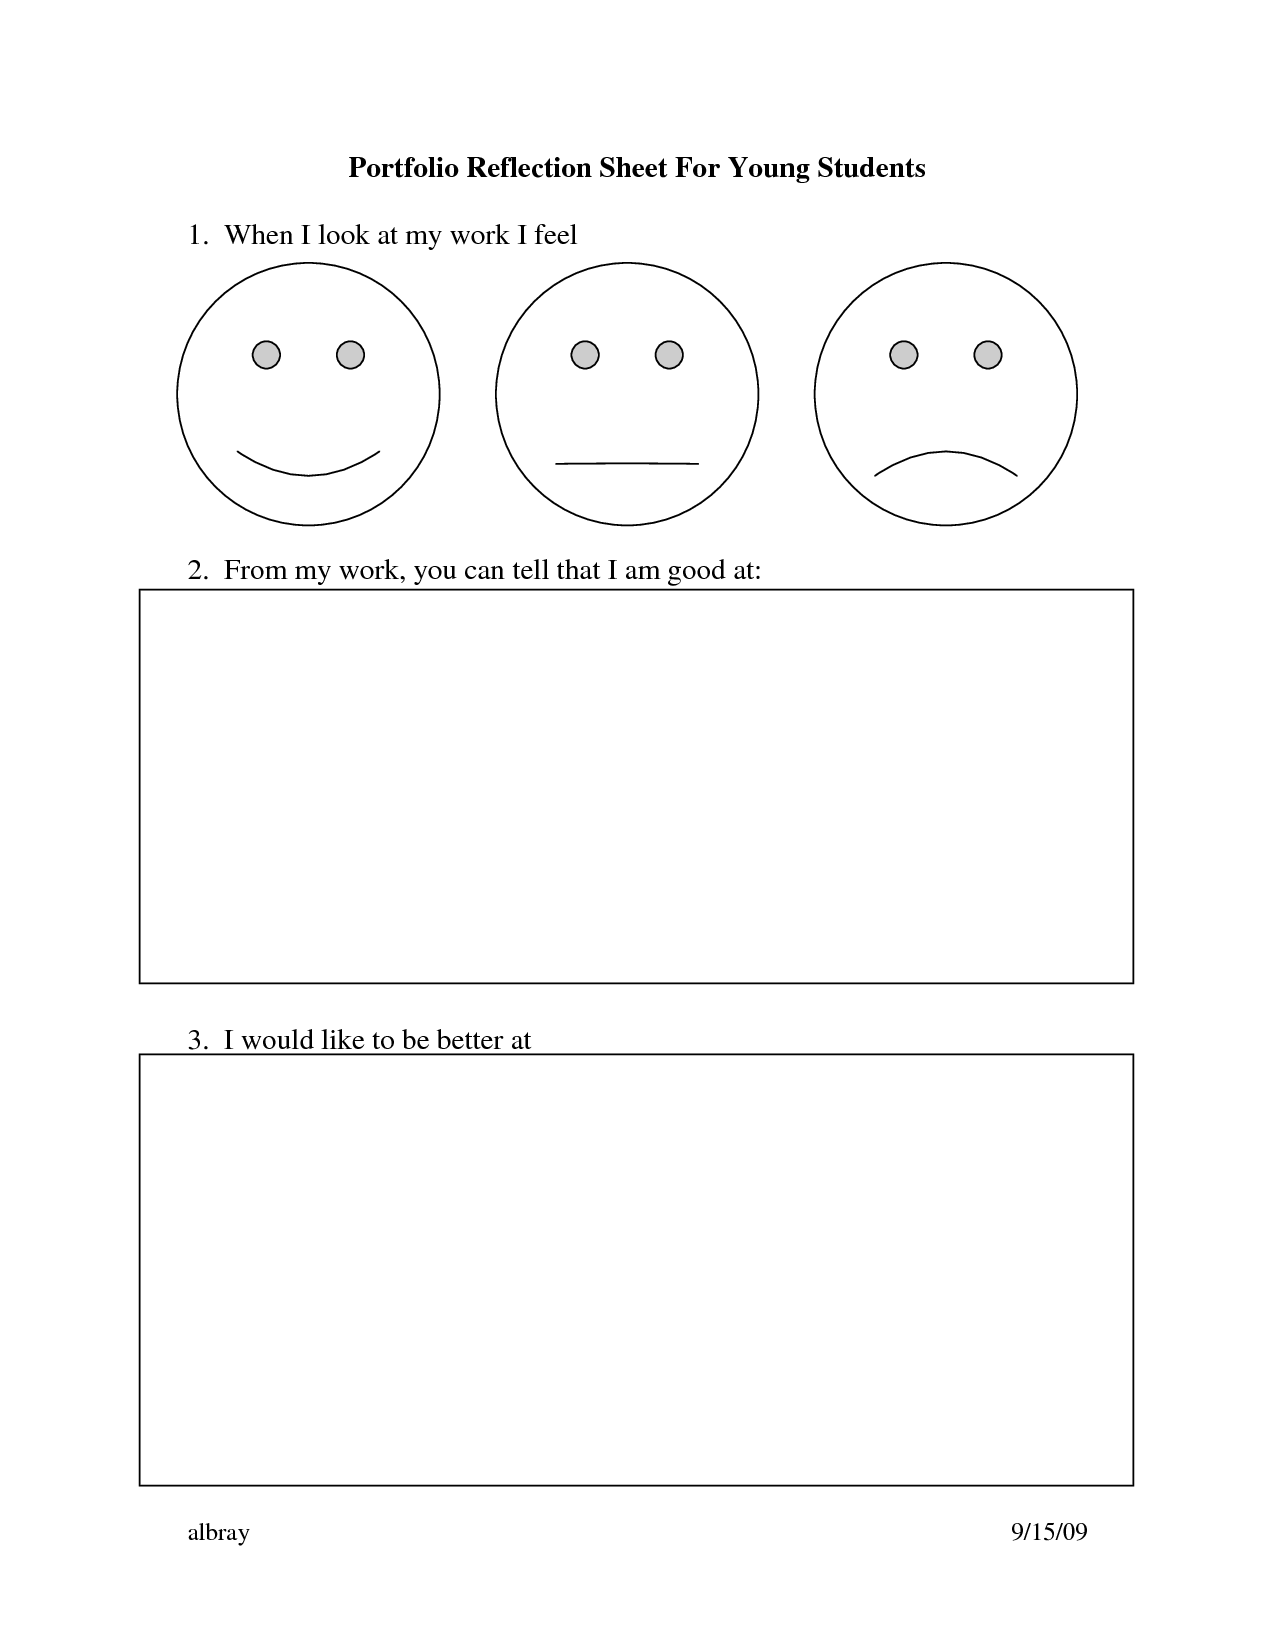 Student Portfolio Reflection Sheets Image